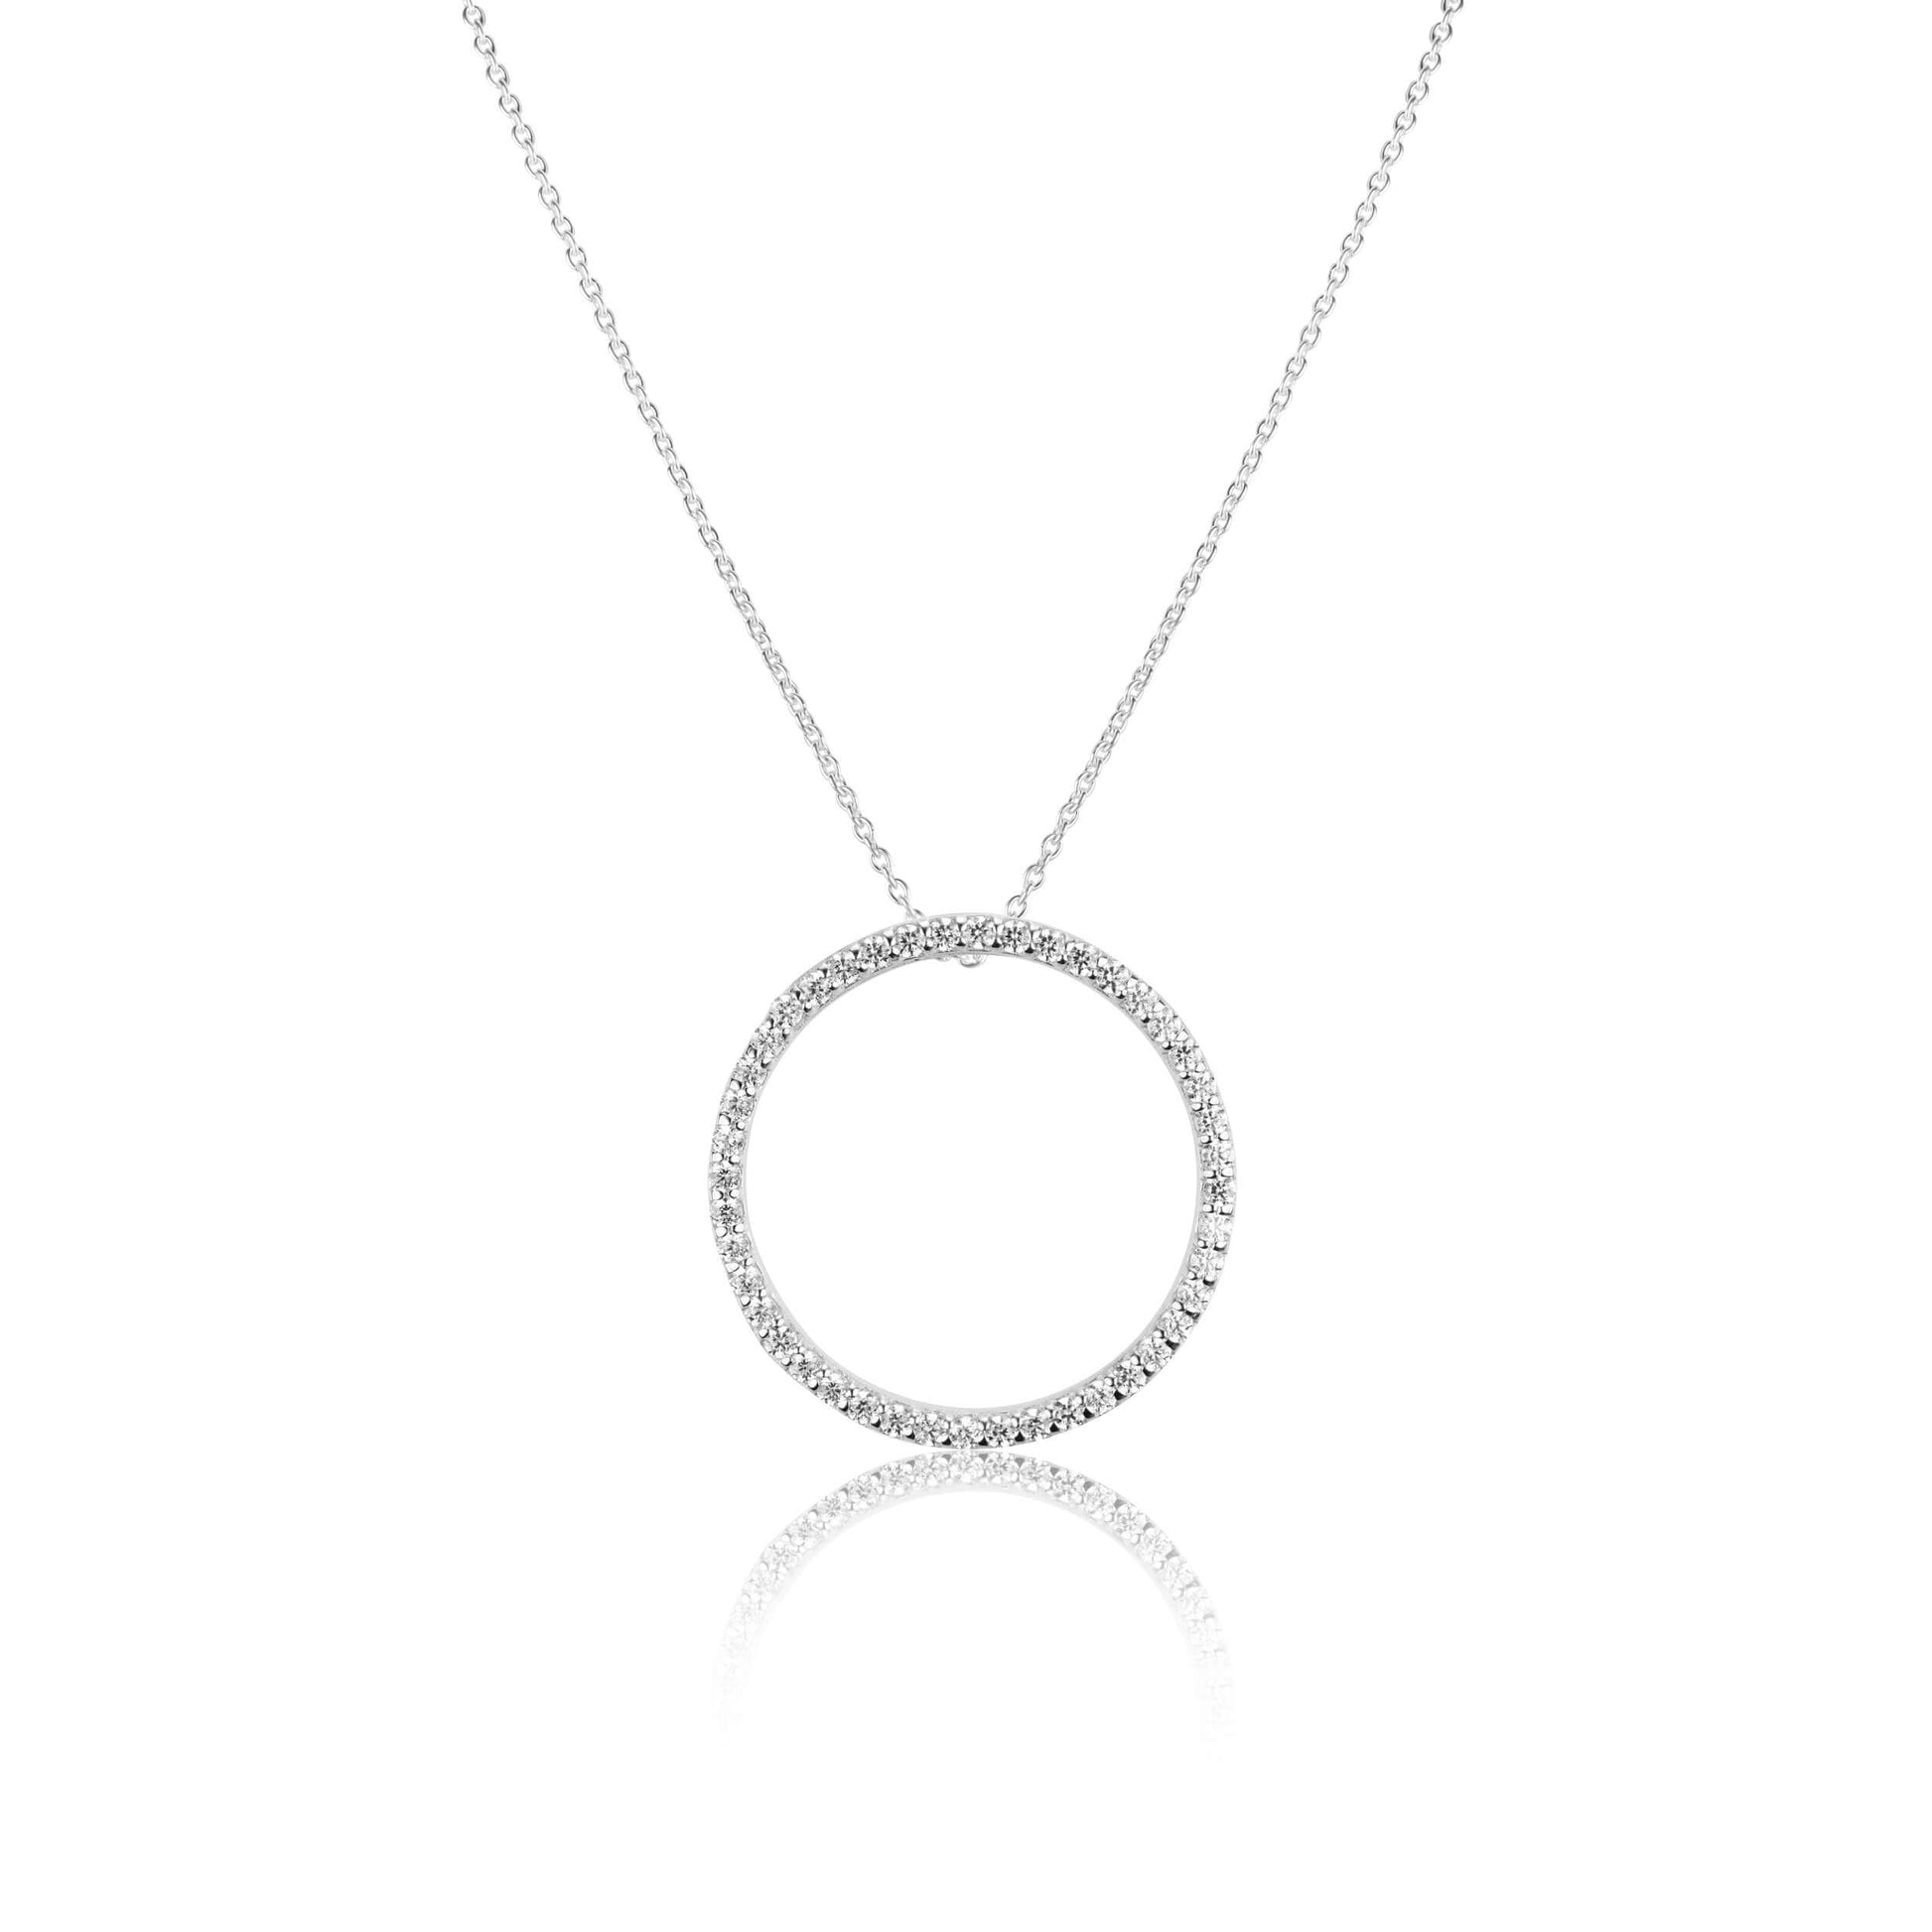 Silver Necklace Exquisite Circle Celeste Necklace